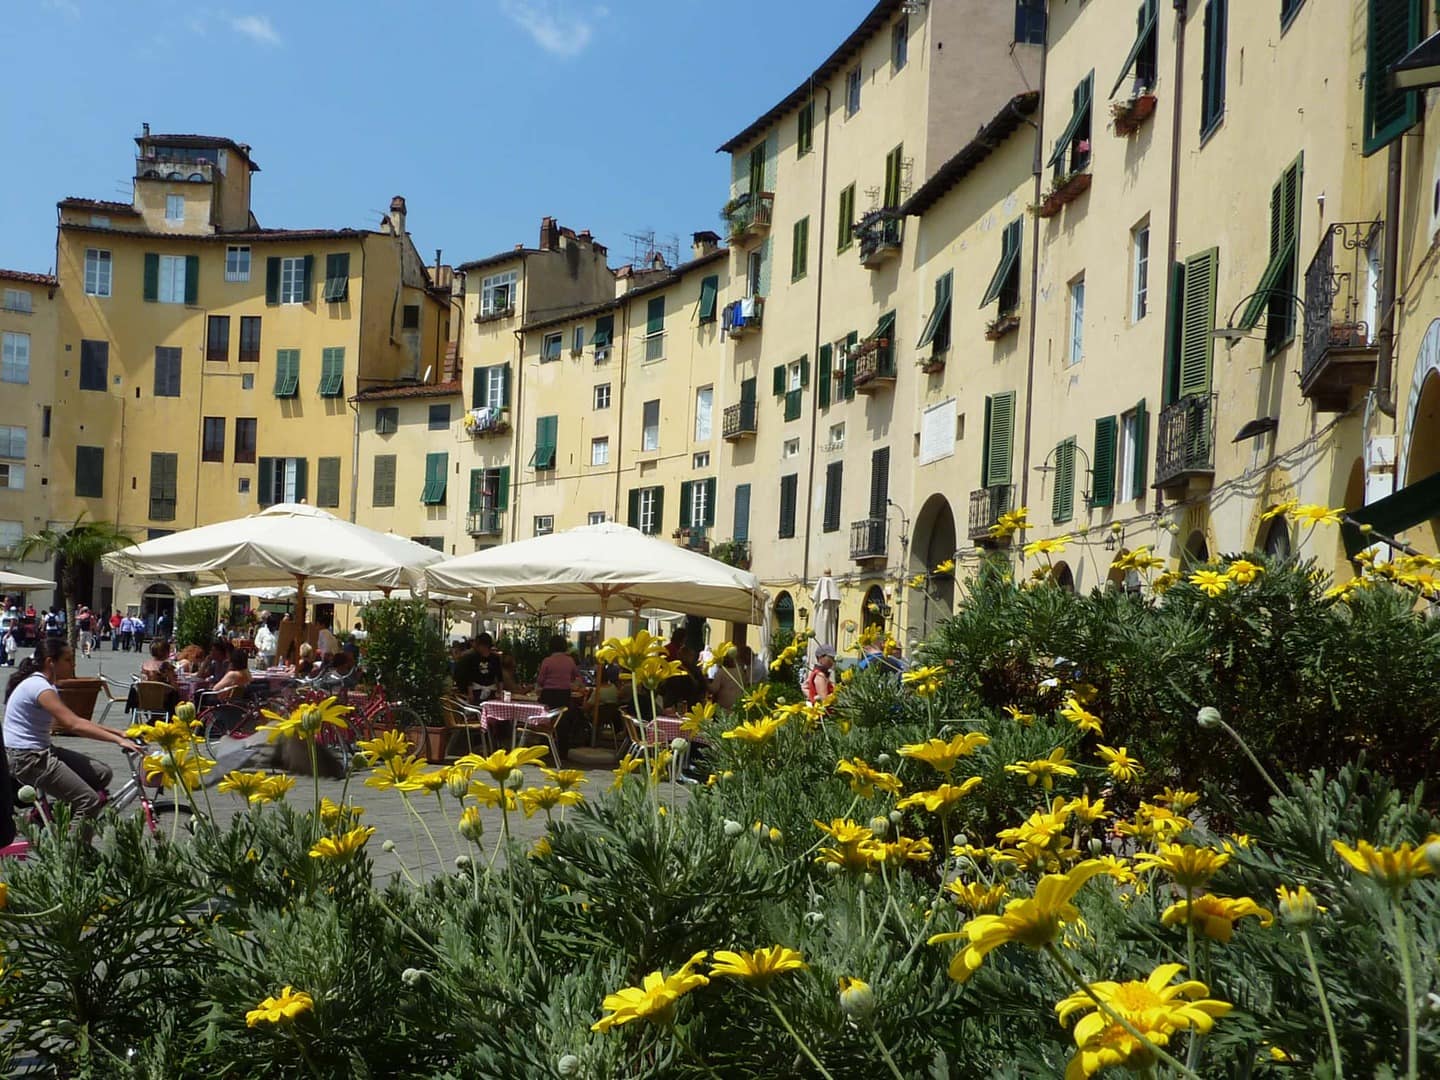 Radreise Italien Alpen-Rom, gelb getünchte Häuserfassade mit grünen Fensterläden mit gelben Blumen im Vordergrund am Piazza dell' Anfiteatro in Lucca in der Toskana